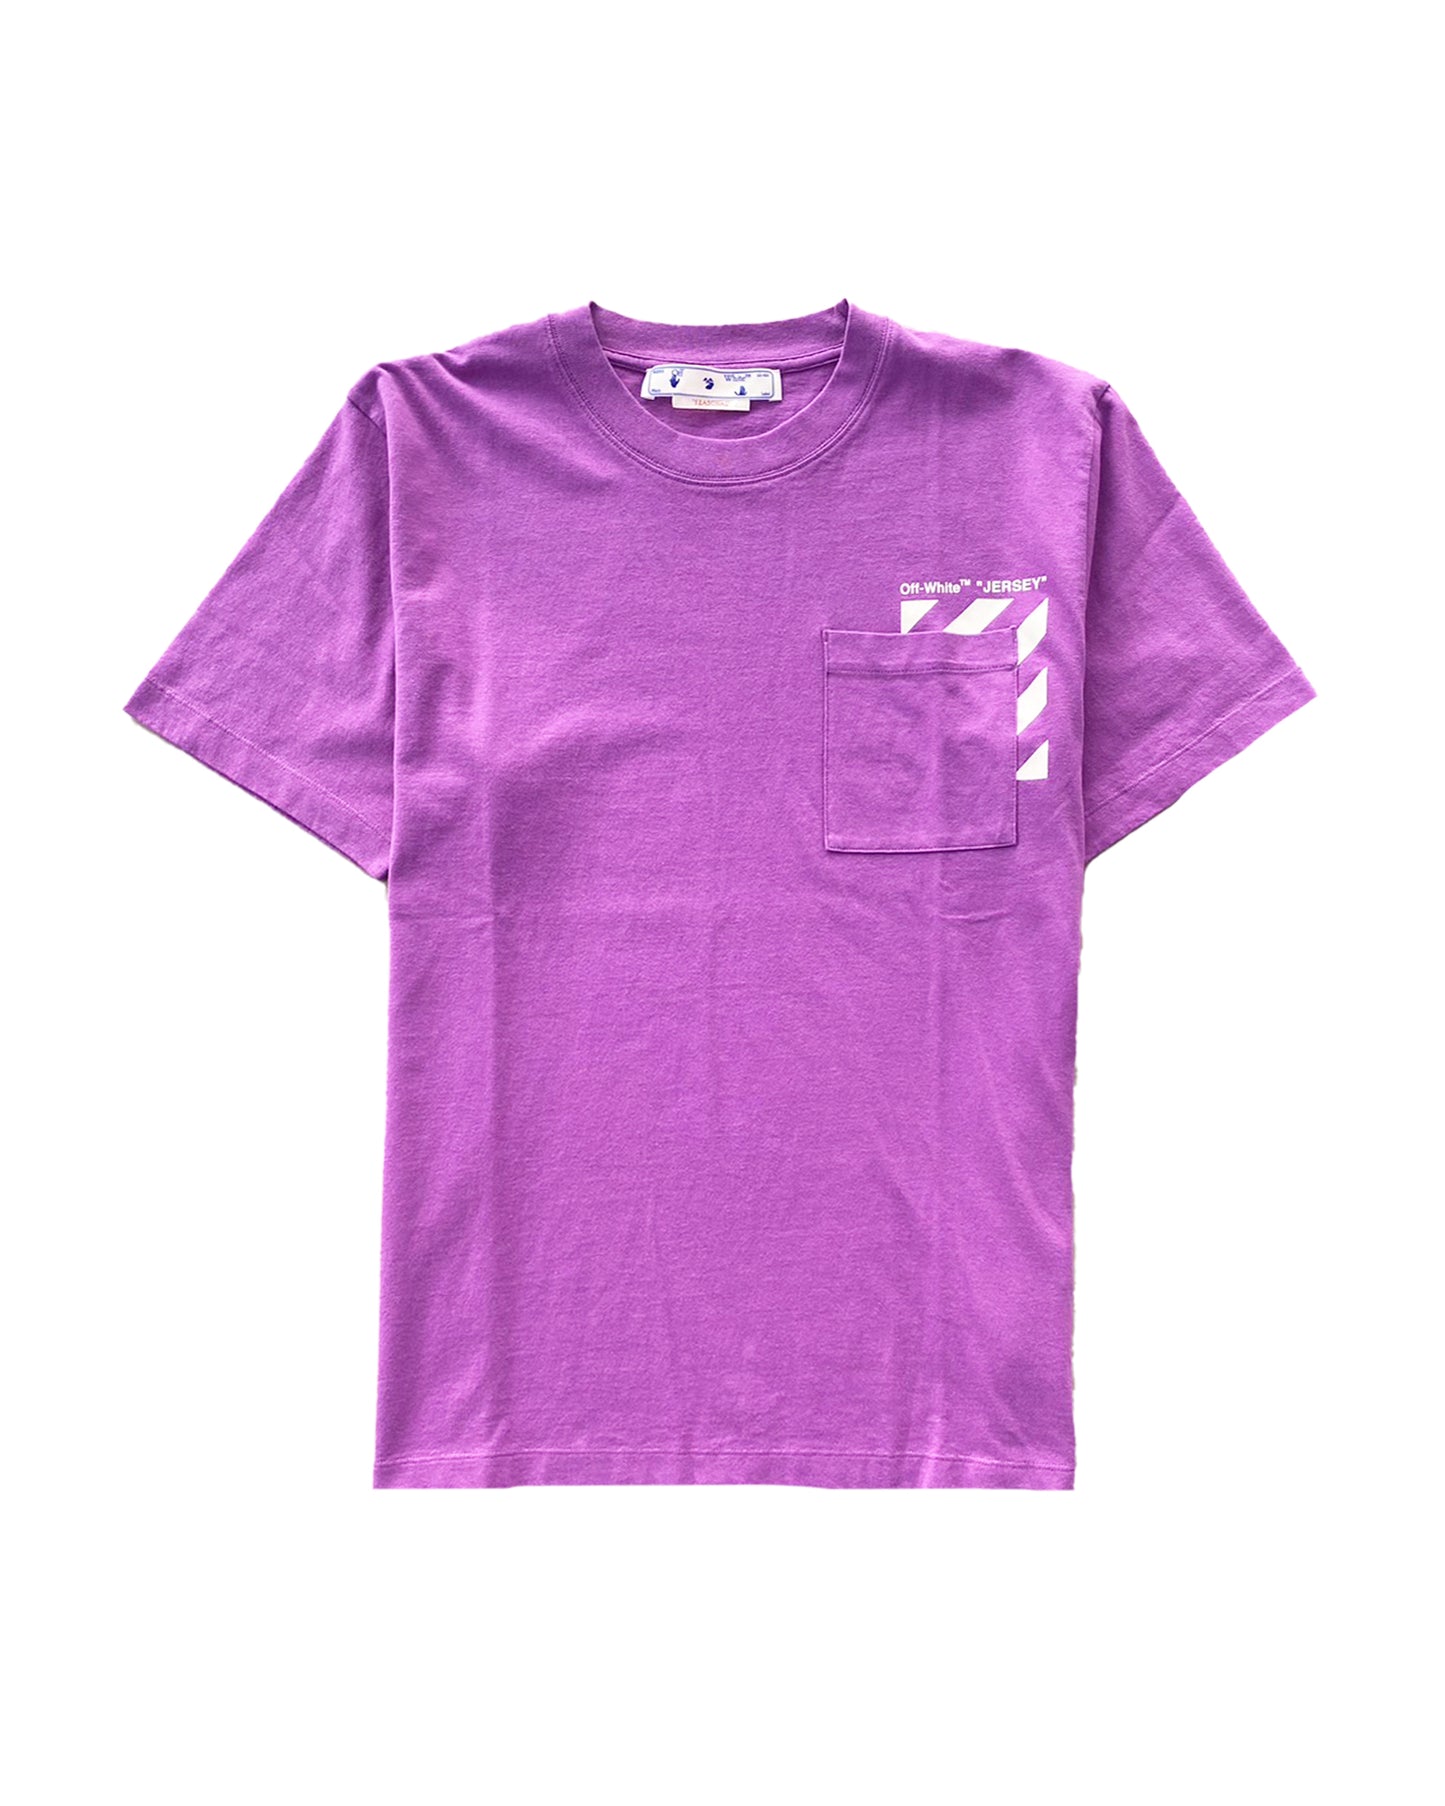 オフホワイト/Diag pkt slim s/s tee/Tシャツ/Purple